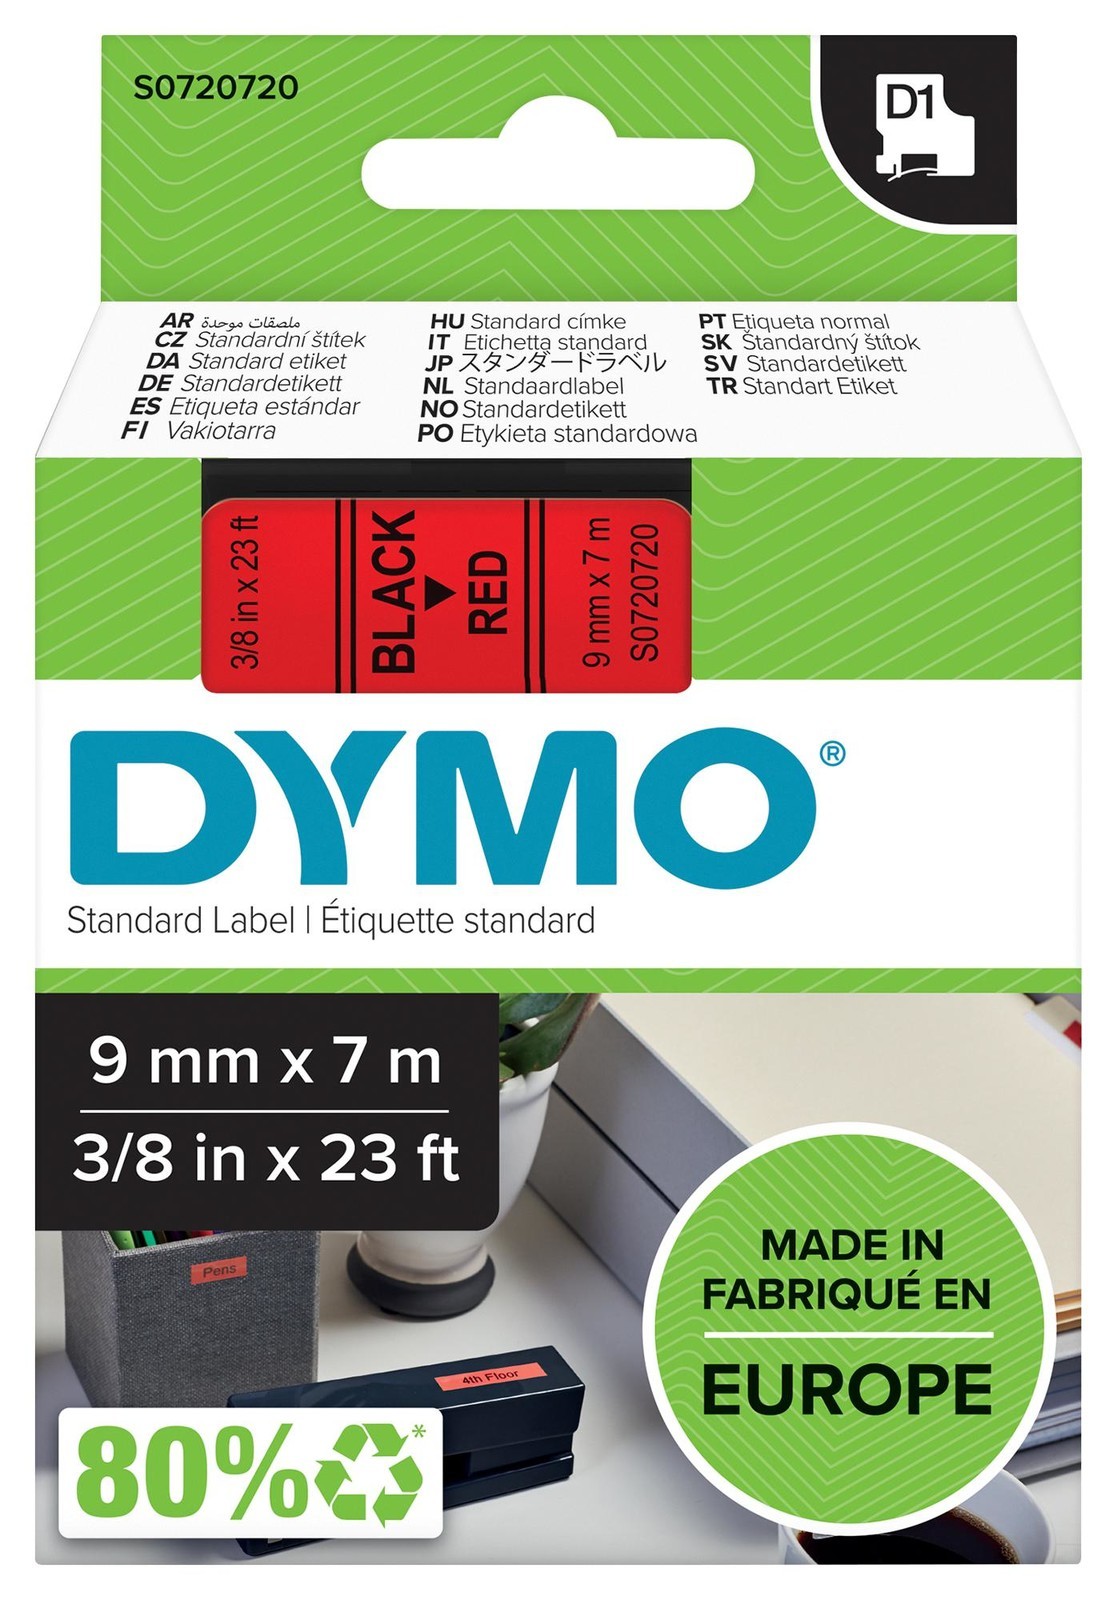 Dymo 40917 Tape, Black/red, 9mm